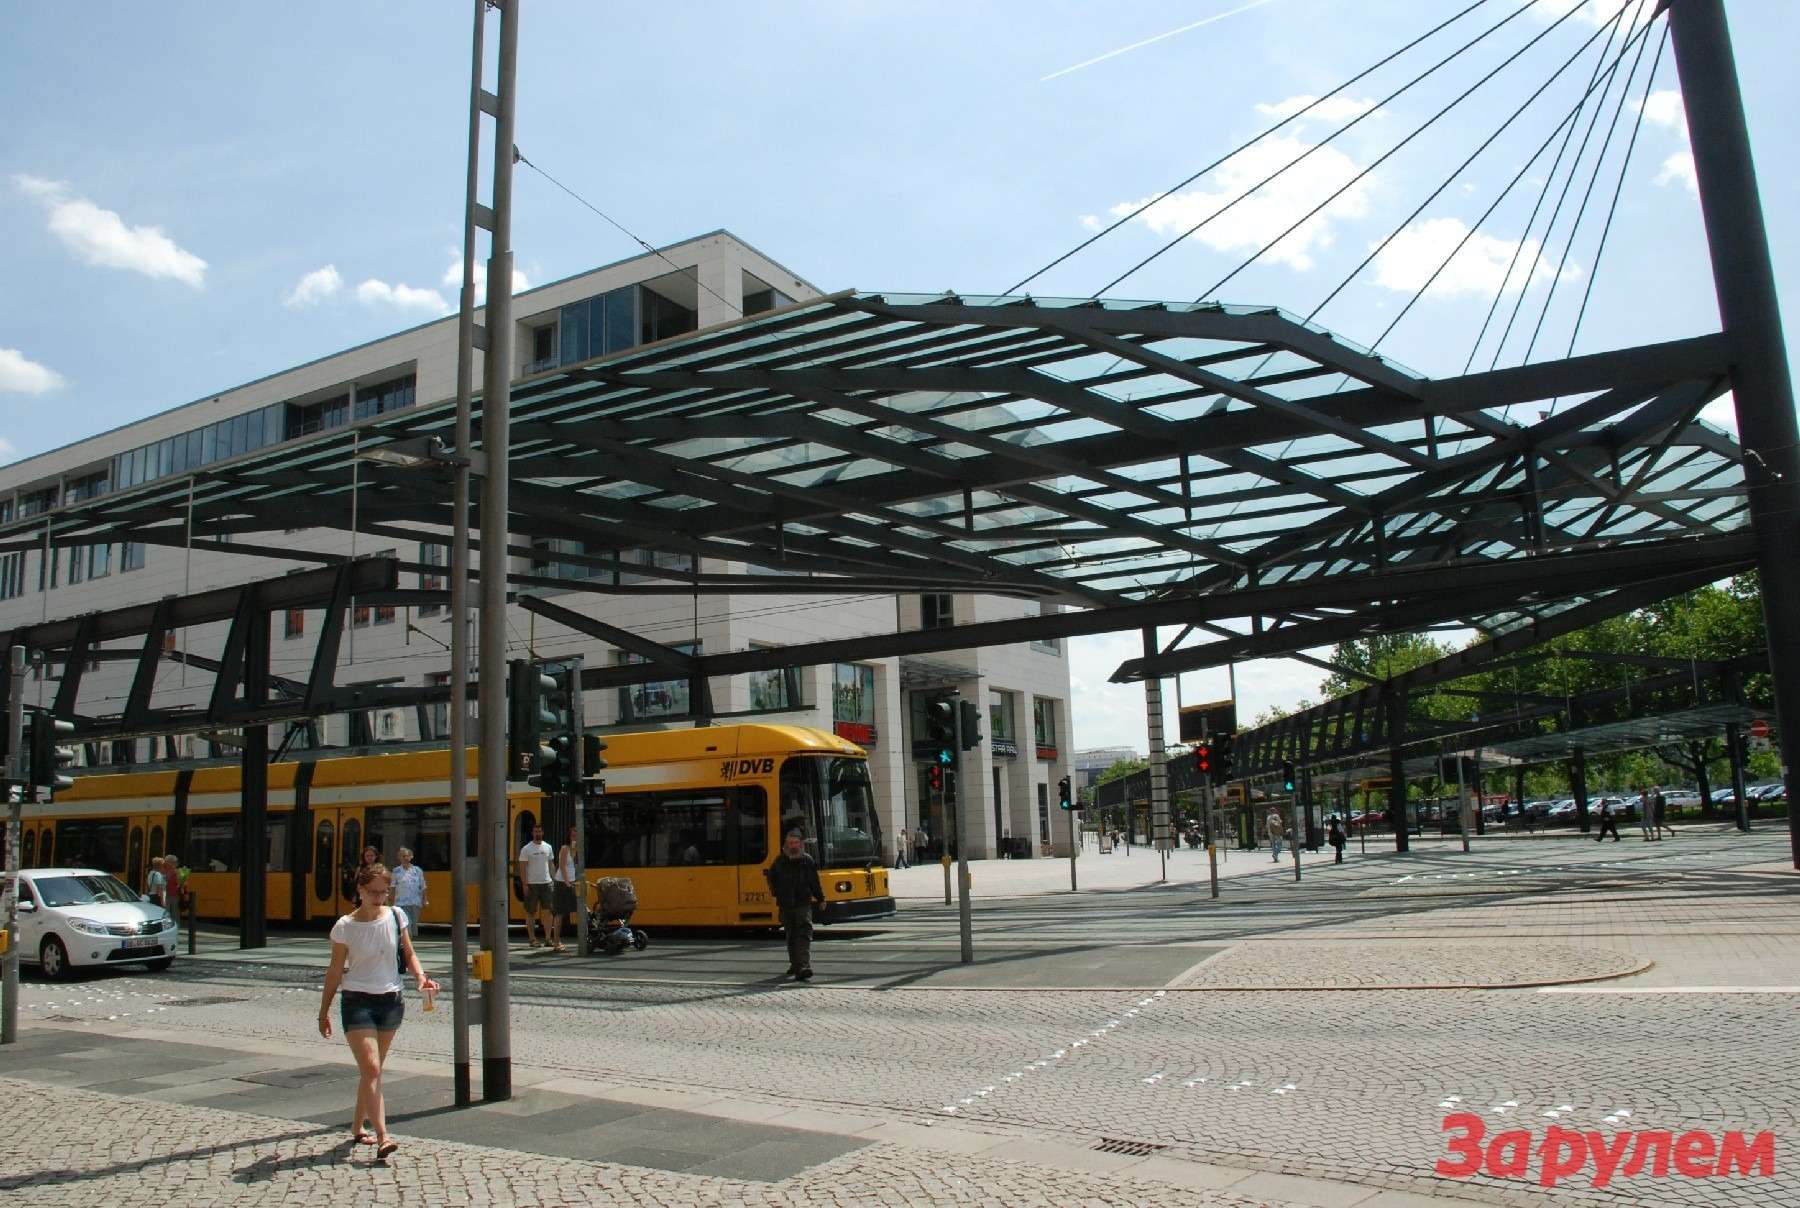 Это сооружение уже не назовешь трамвайной остановкой: в центре Дрездена на двух улицах раскинулся настоящий вокзал, вмещающий несколько многозвенных составов. Могучие металлические конструкции держат перекрытия не только над перронами, но и над пешеходными переходами.